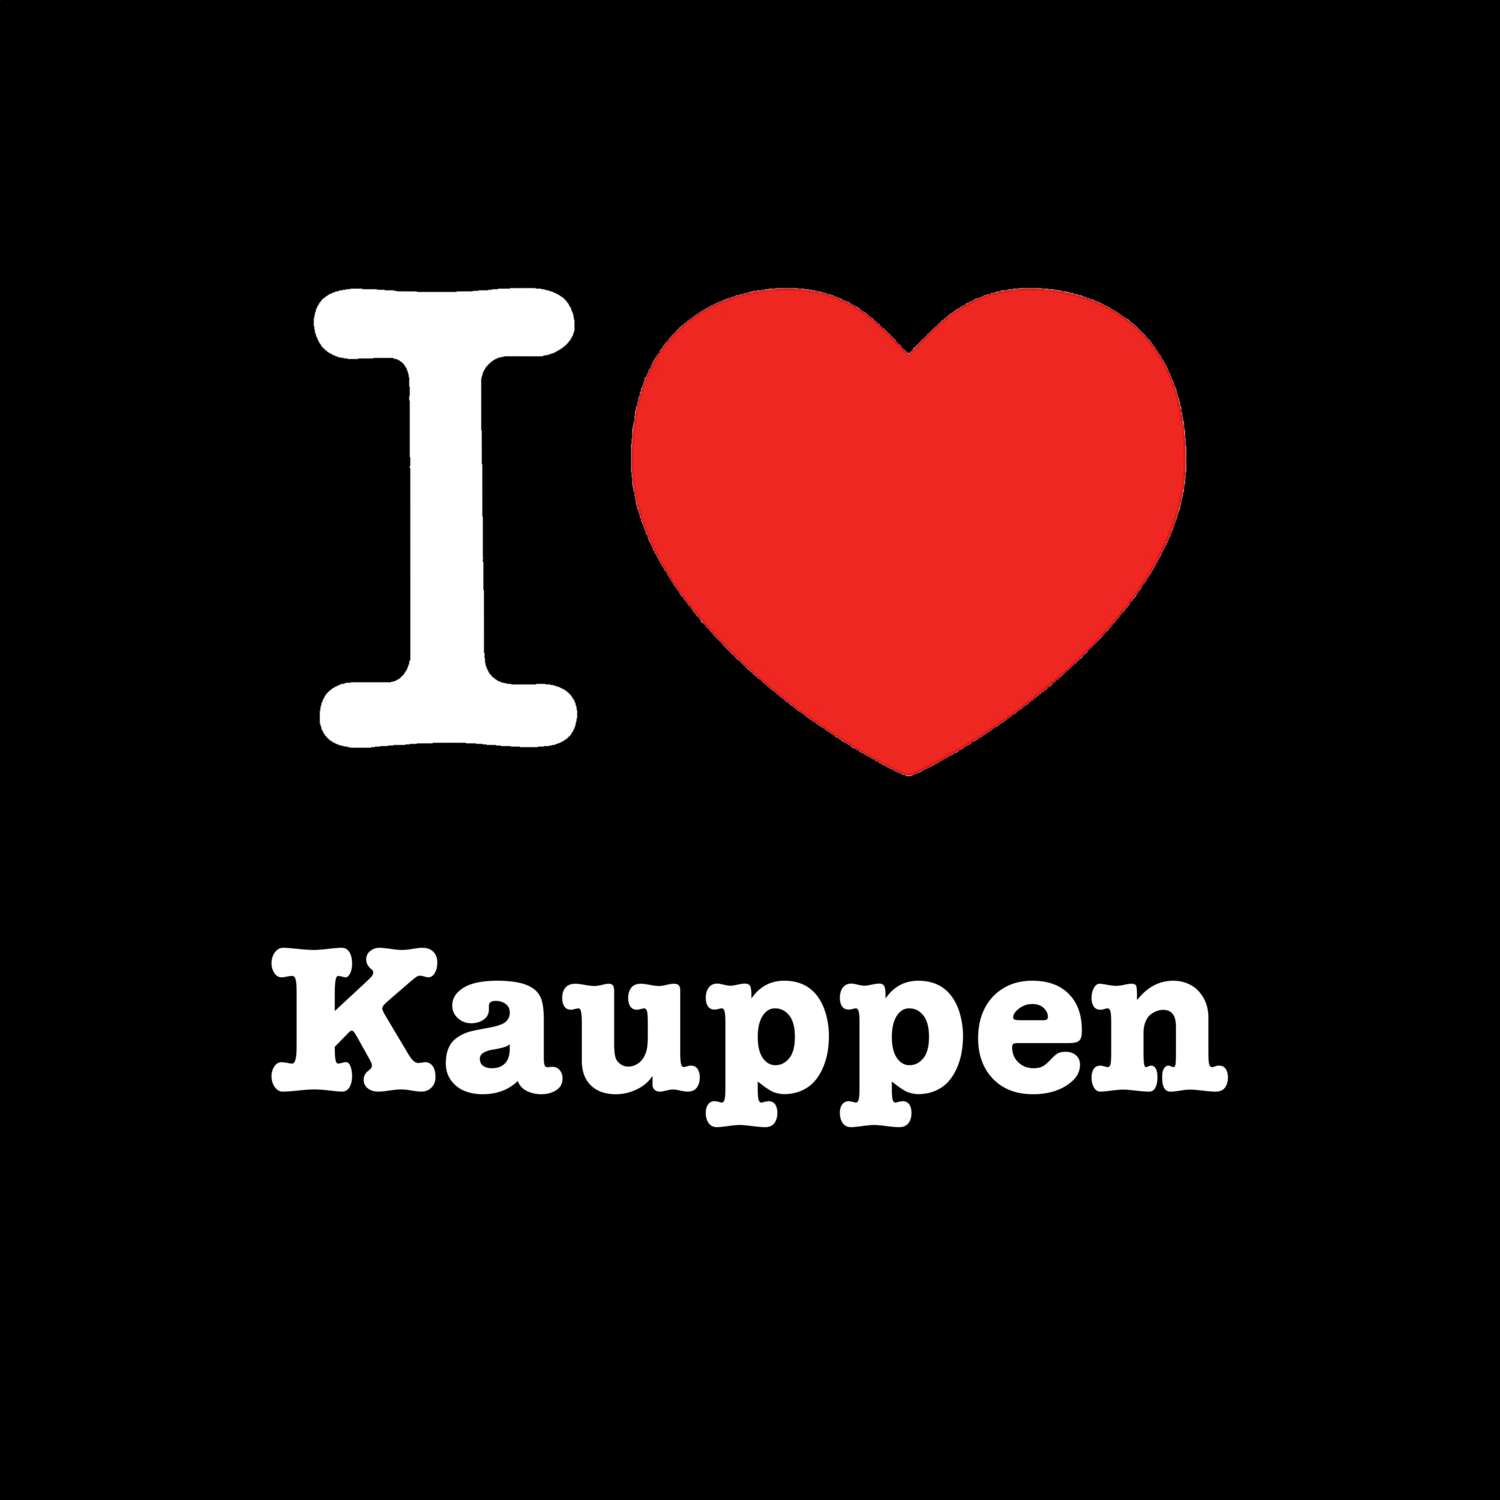 Kauppen T-Shirt »I love«